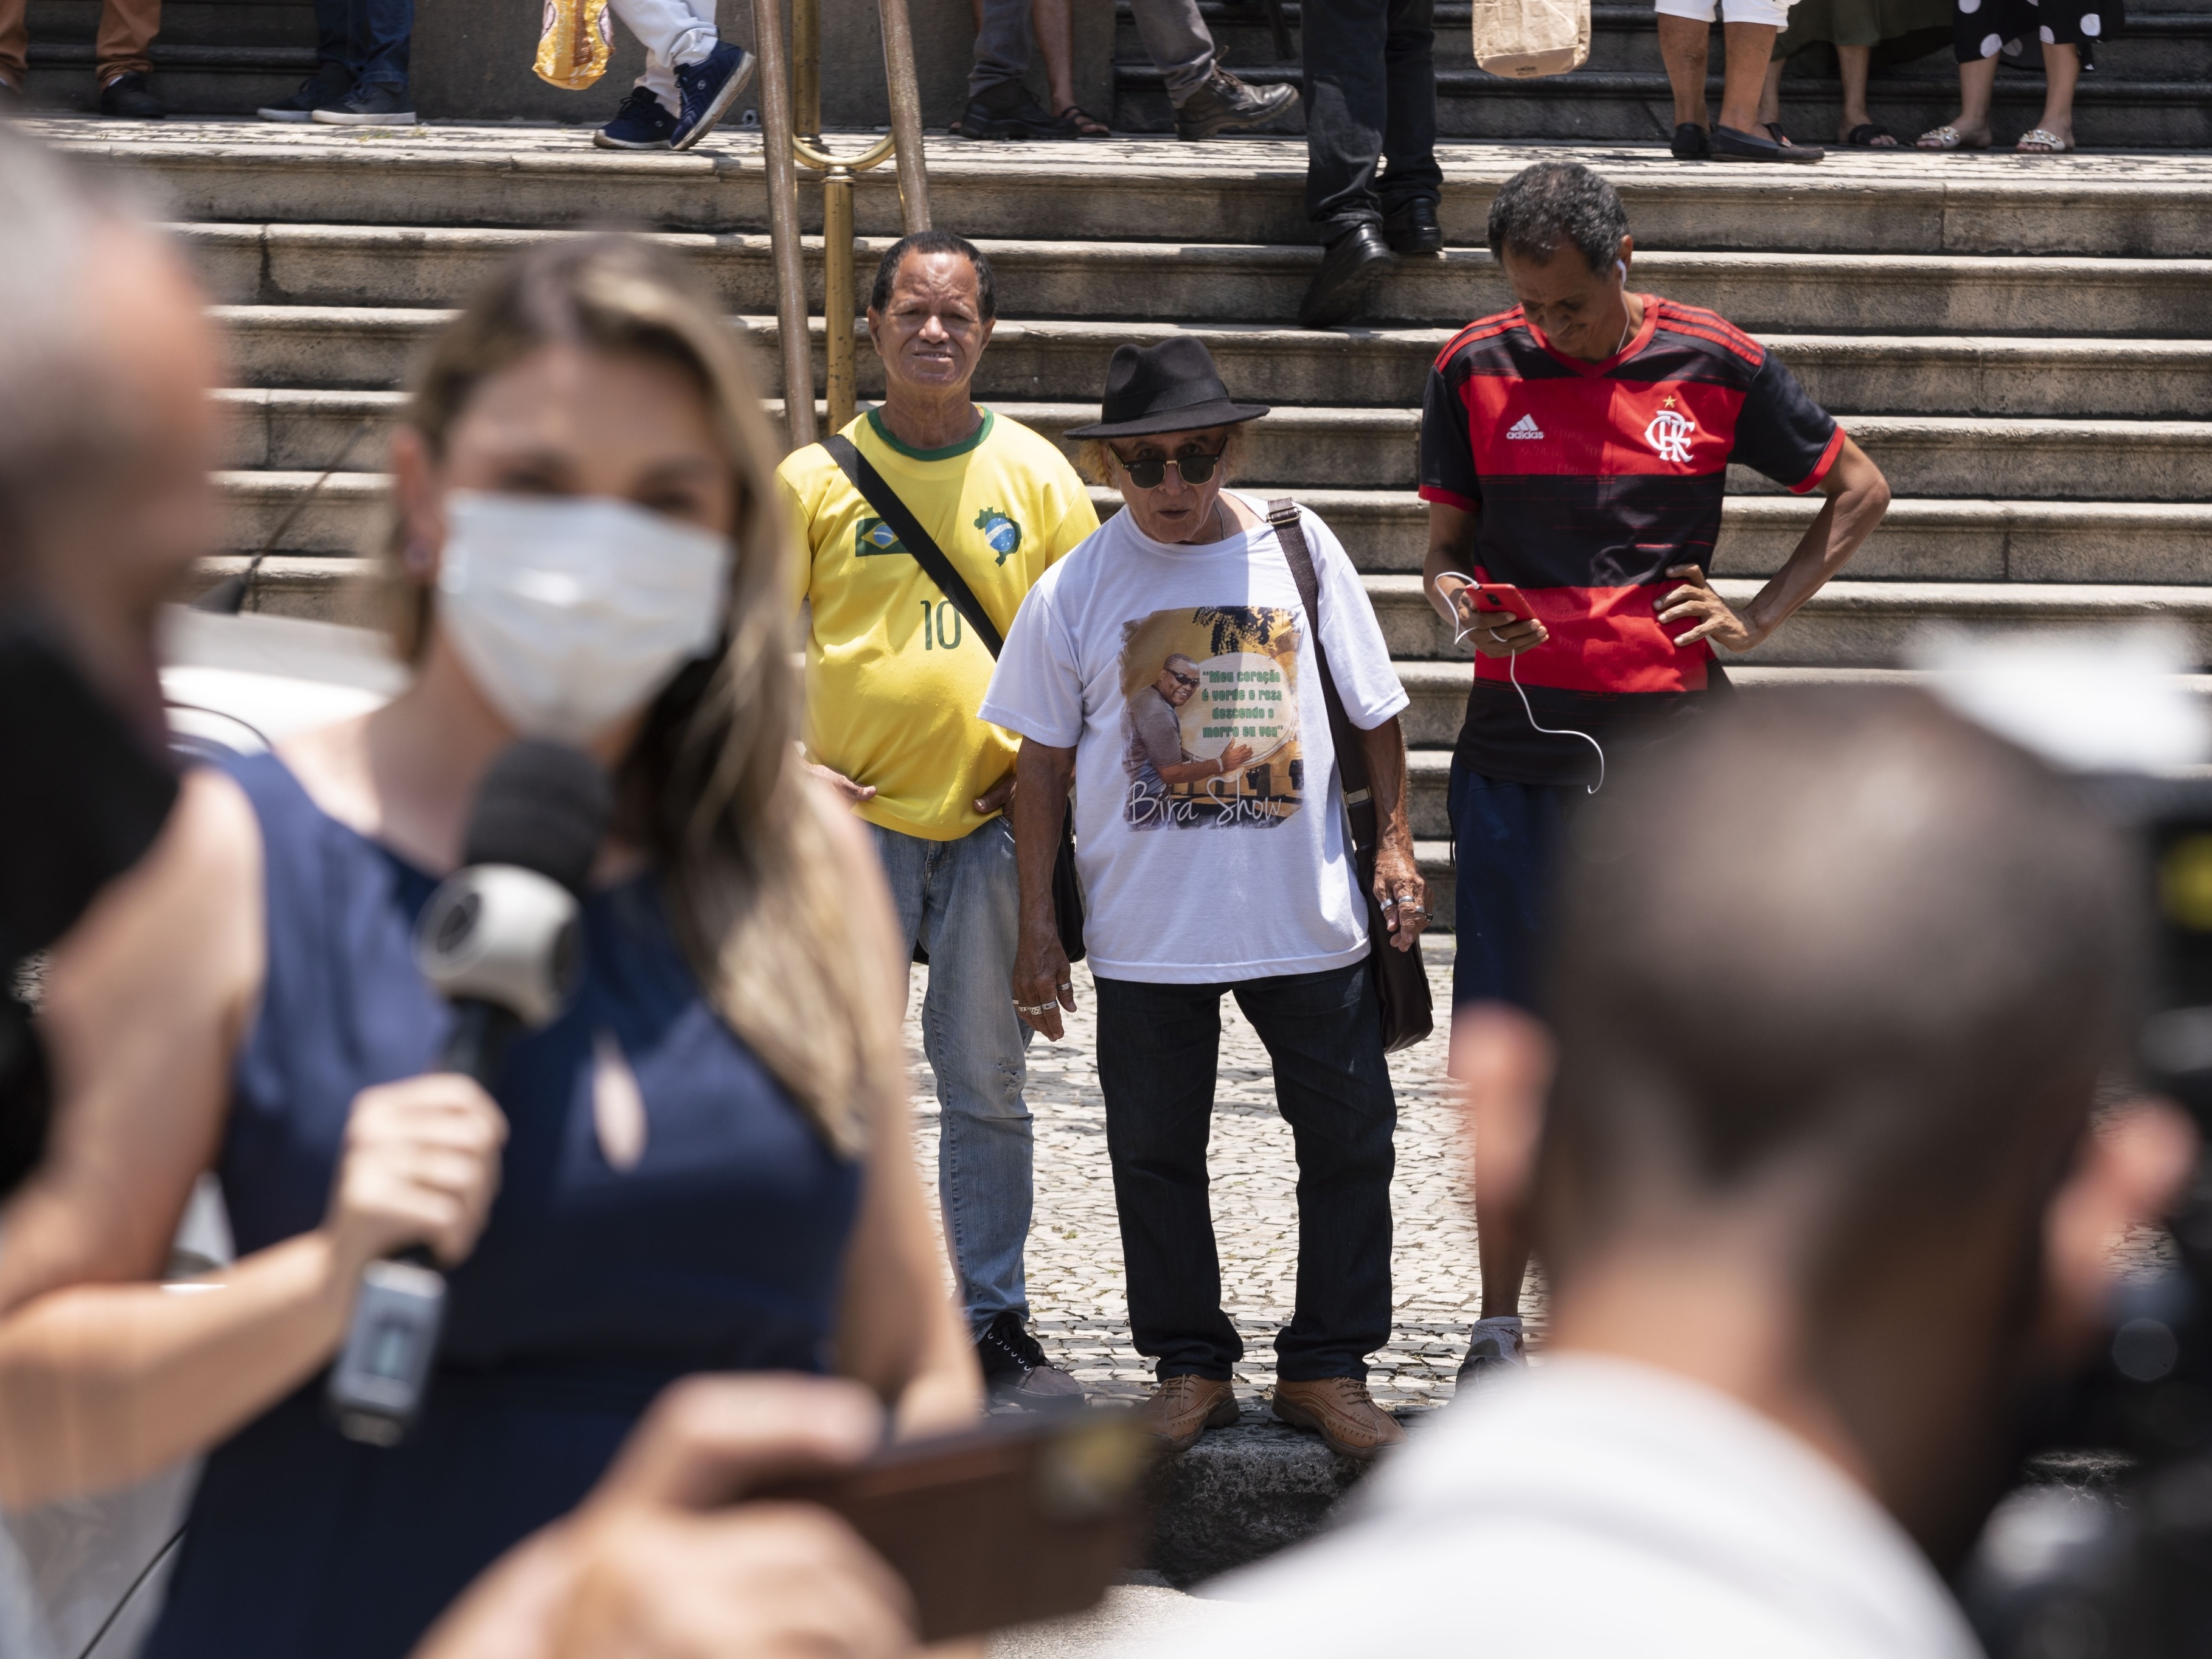 Papagaios de pirata' do Rio colecionam gafes e risos em reportagens de TV -  27/01/2022 - UOL TAB